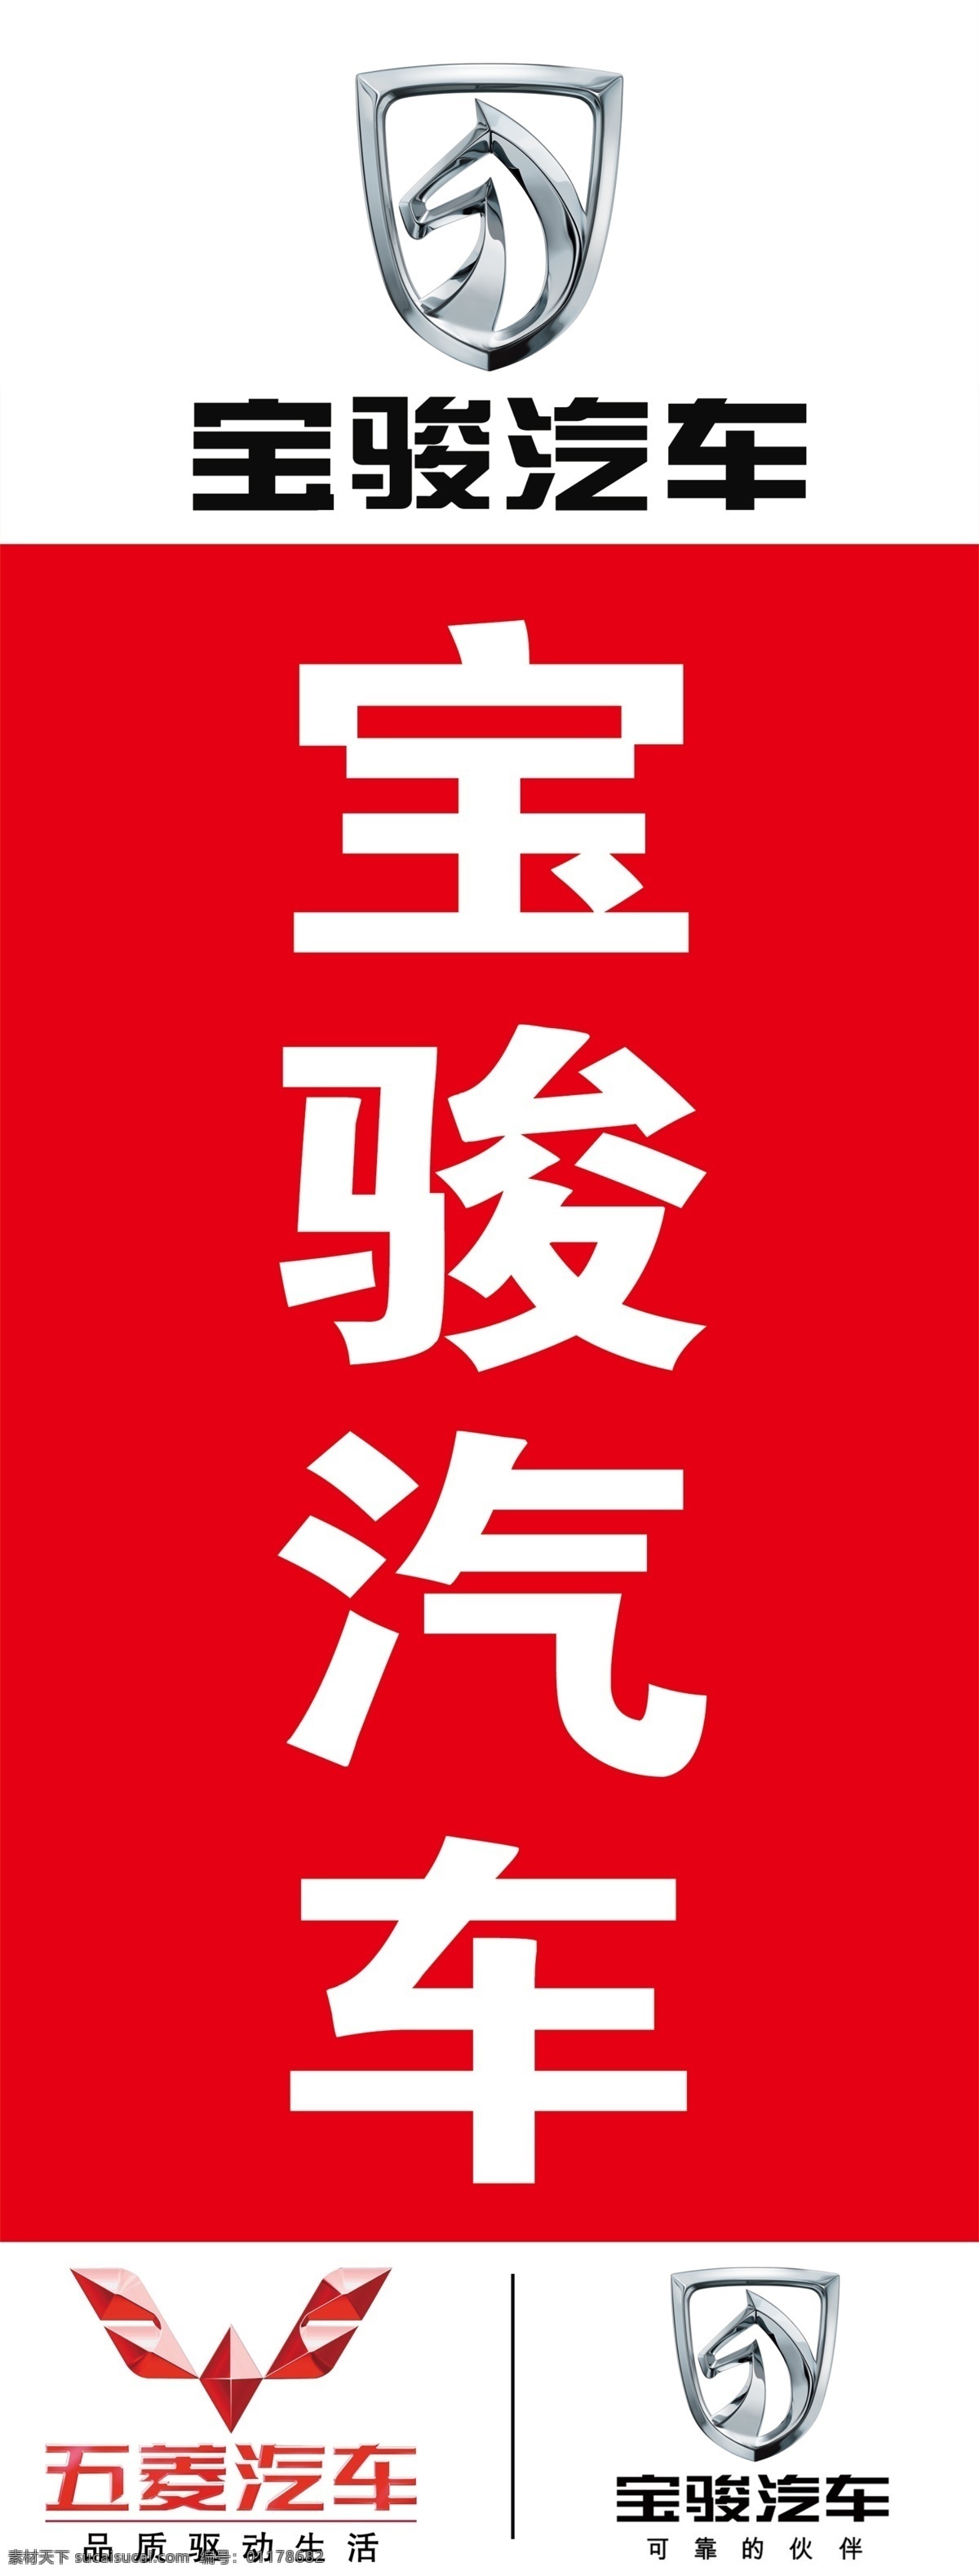 五菱宝骏 宝骏汽车 五菱汽车 汽贸公司 4s店 汽贸直营店 标志 logo 展架 广告牌 展板模板